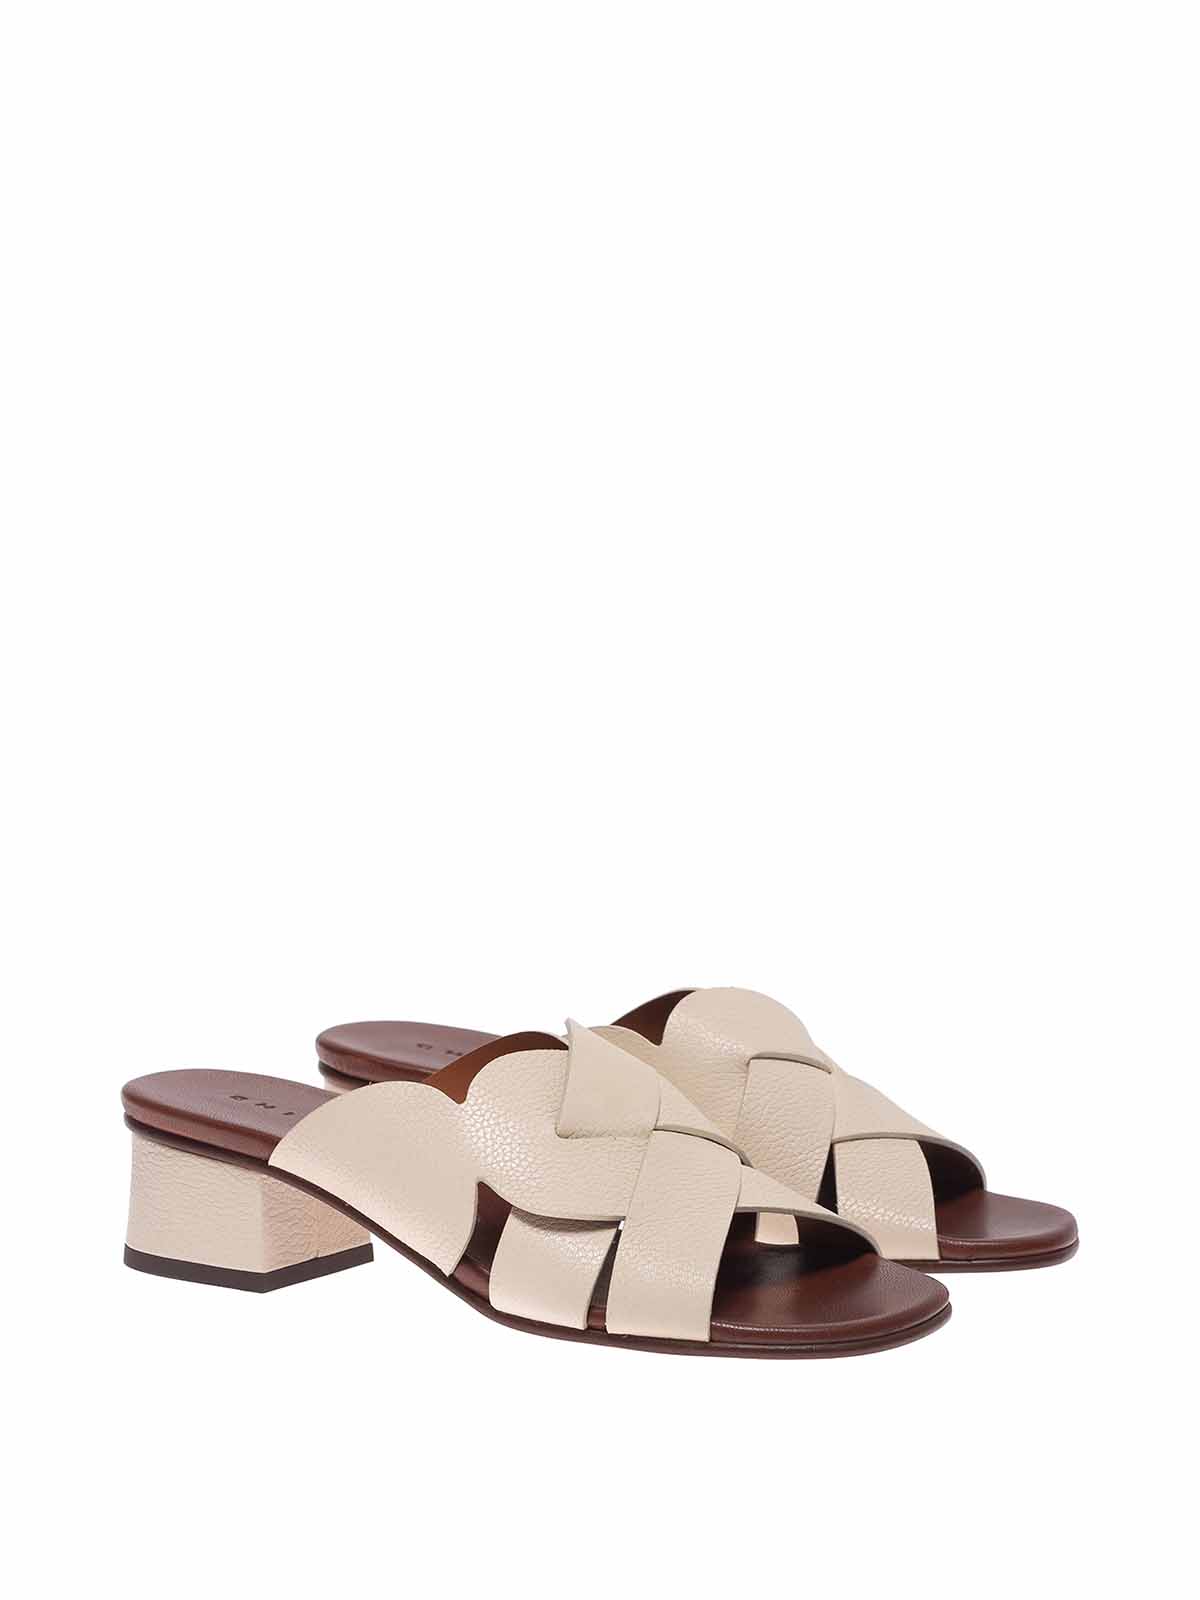 Chie Mihara - Quido sandals - QUIDOPANNA | Shop online at iKRIX